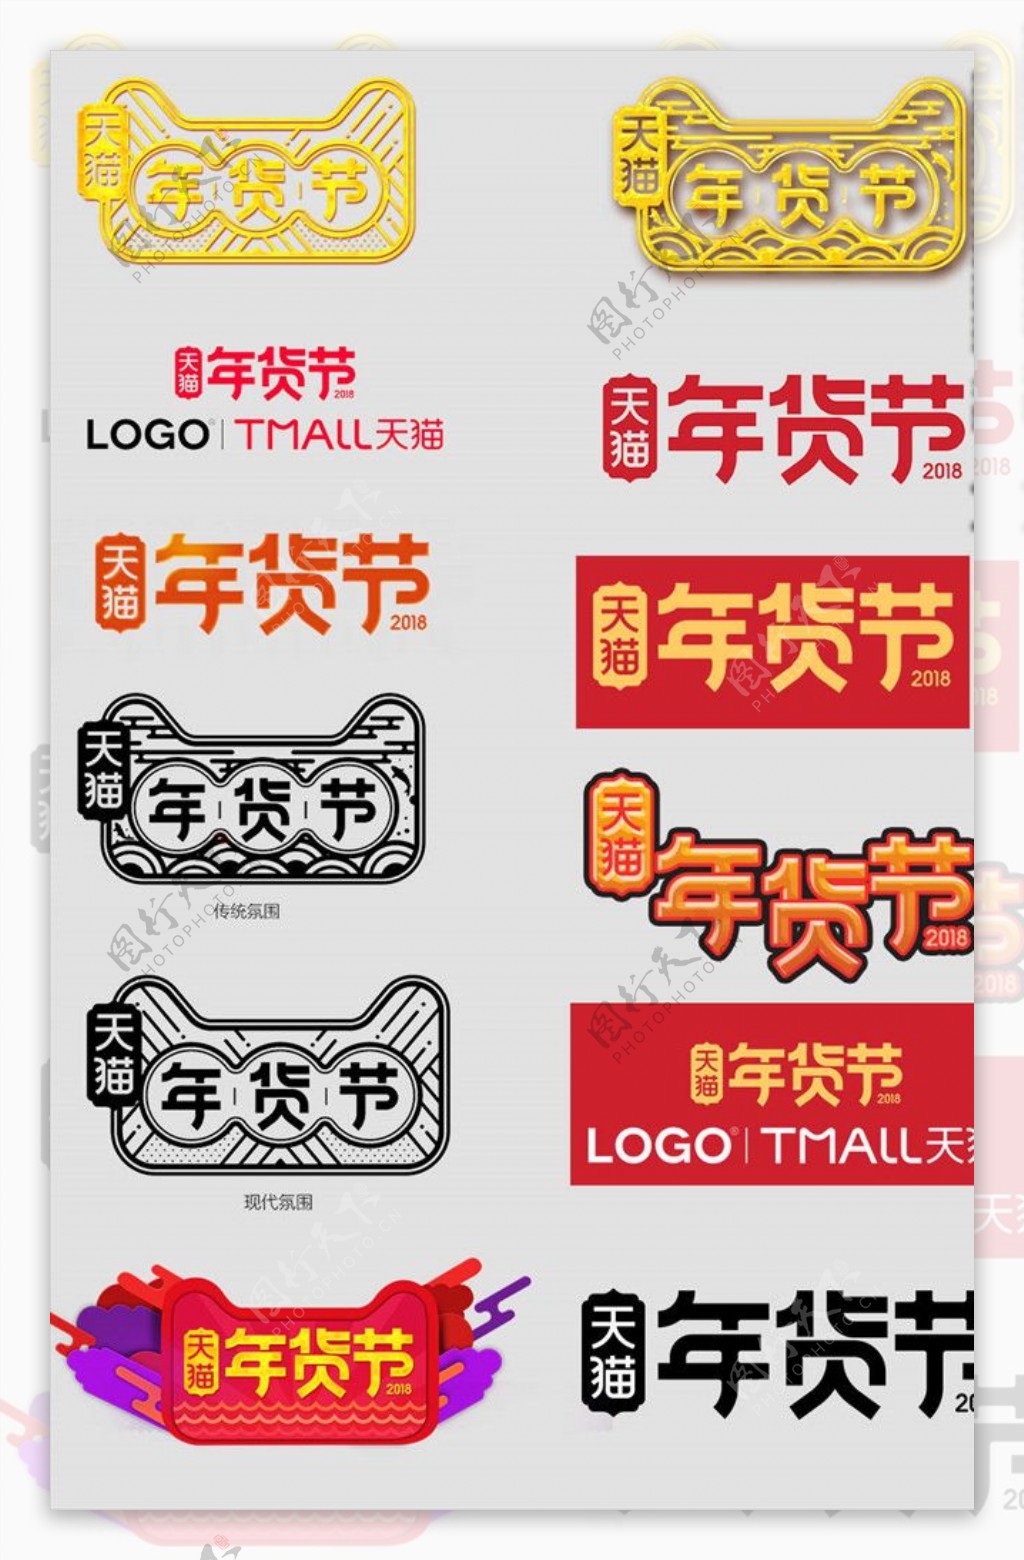 天猫年货节logo字体设计素材